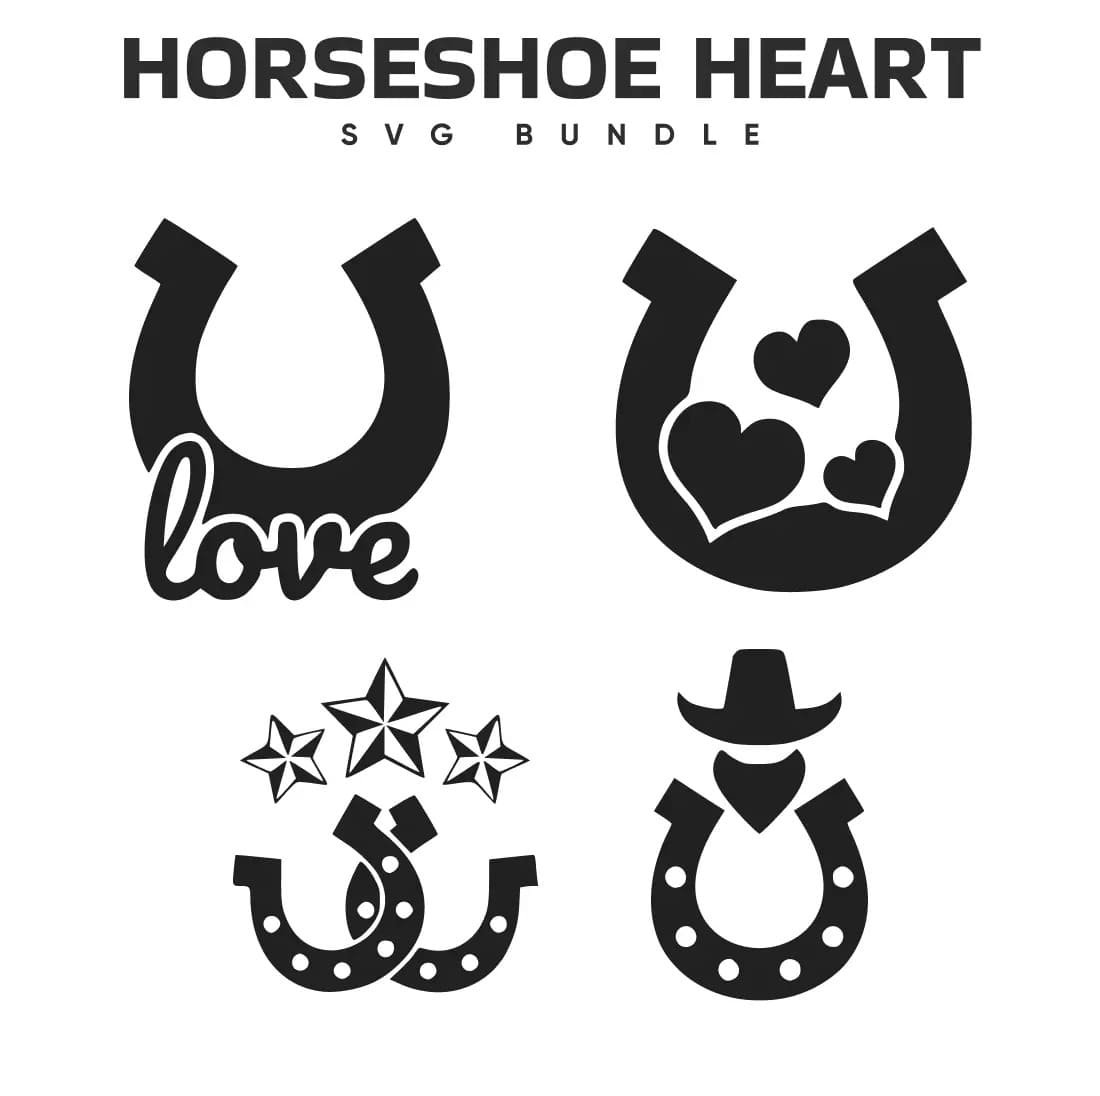 Horse shoe heart svg bundle.